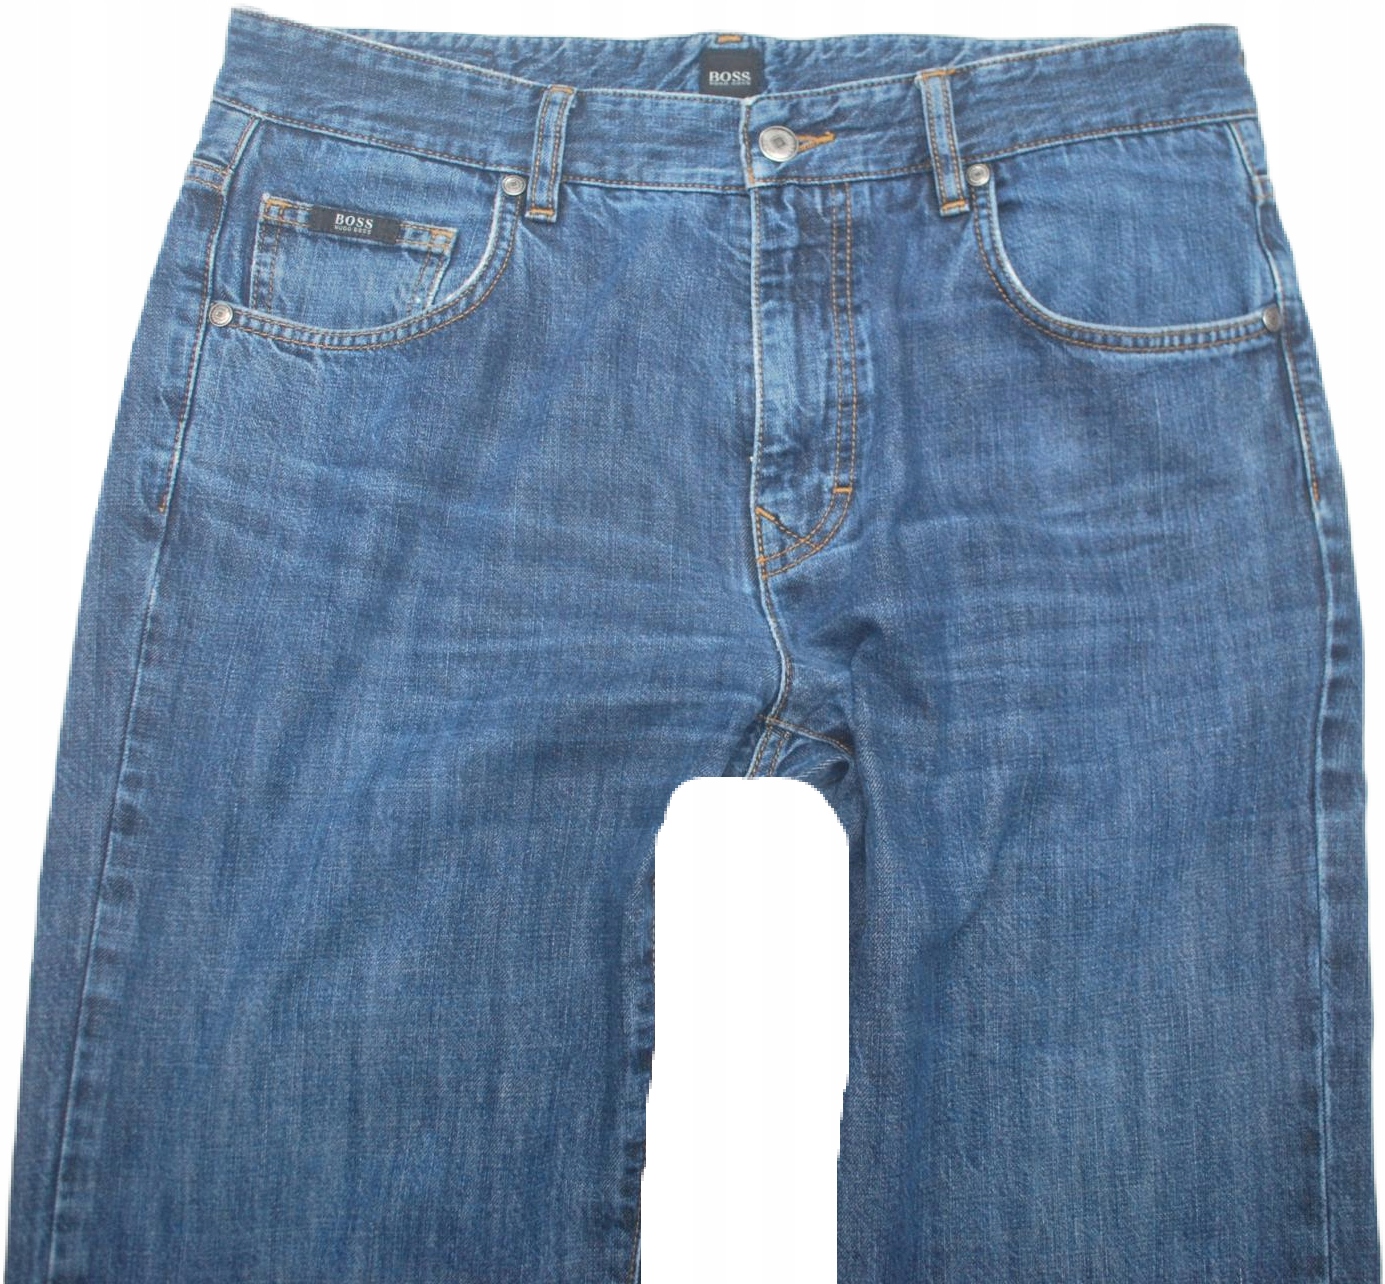 z Modne Spodnie jeans Hugo Boss 34/36 Kansas USA